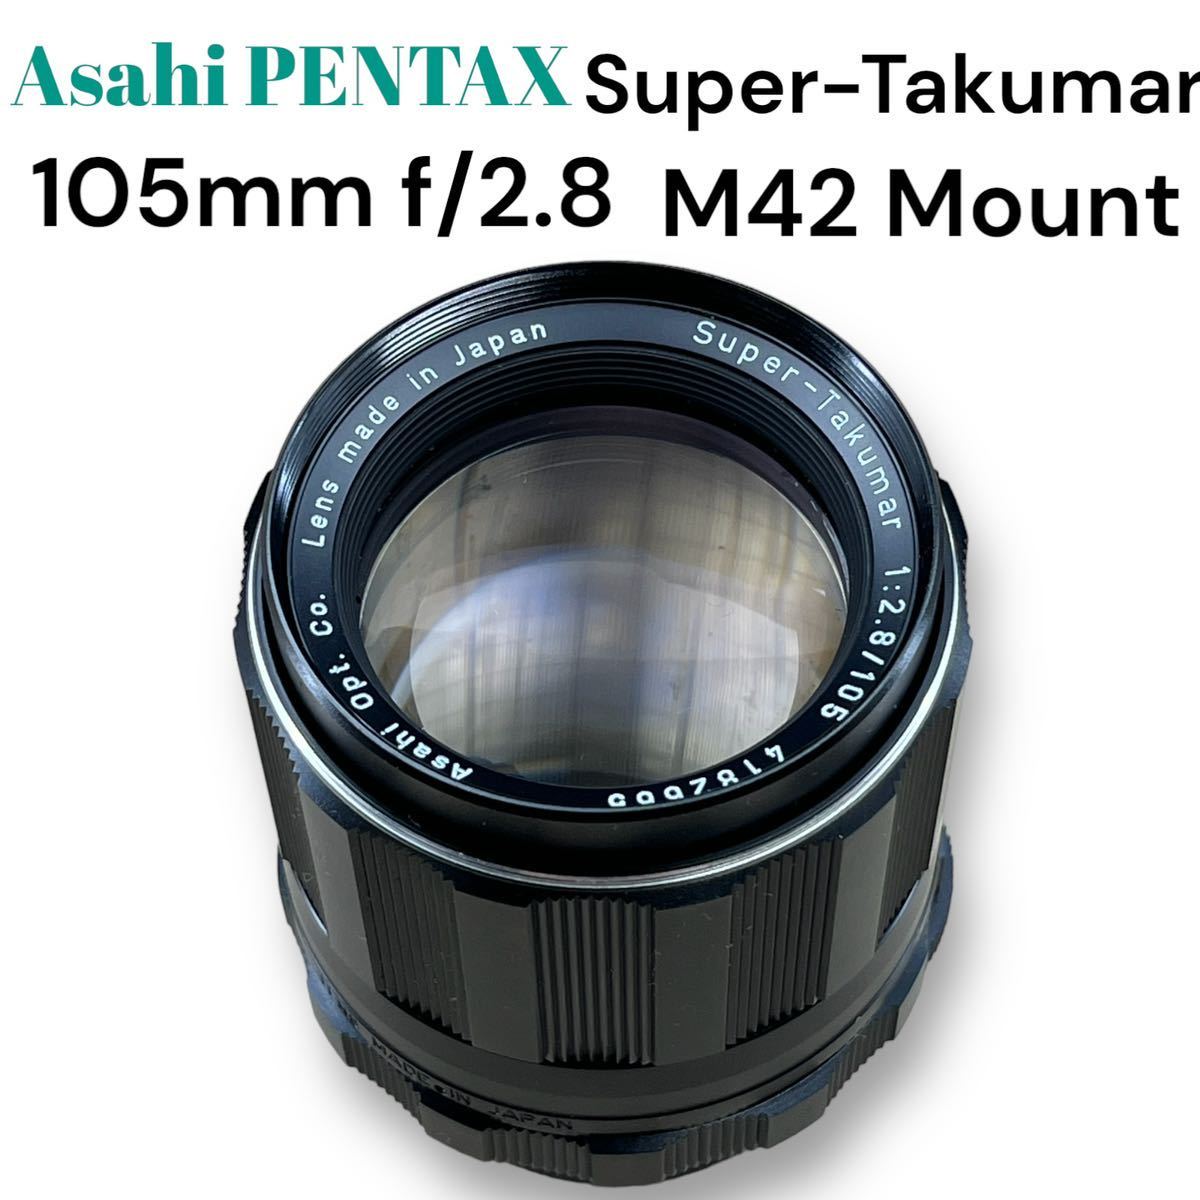 《真夏のオールドレンズ祭》ASAHI PENTAX Super-Takumar 105mm F2.8 M42マウント 極めて美品 クリアなレンズ 完動品_画像3